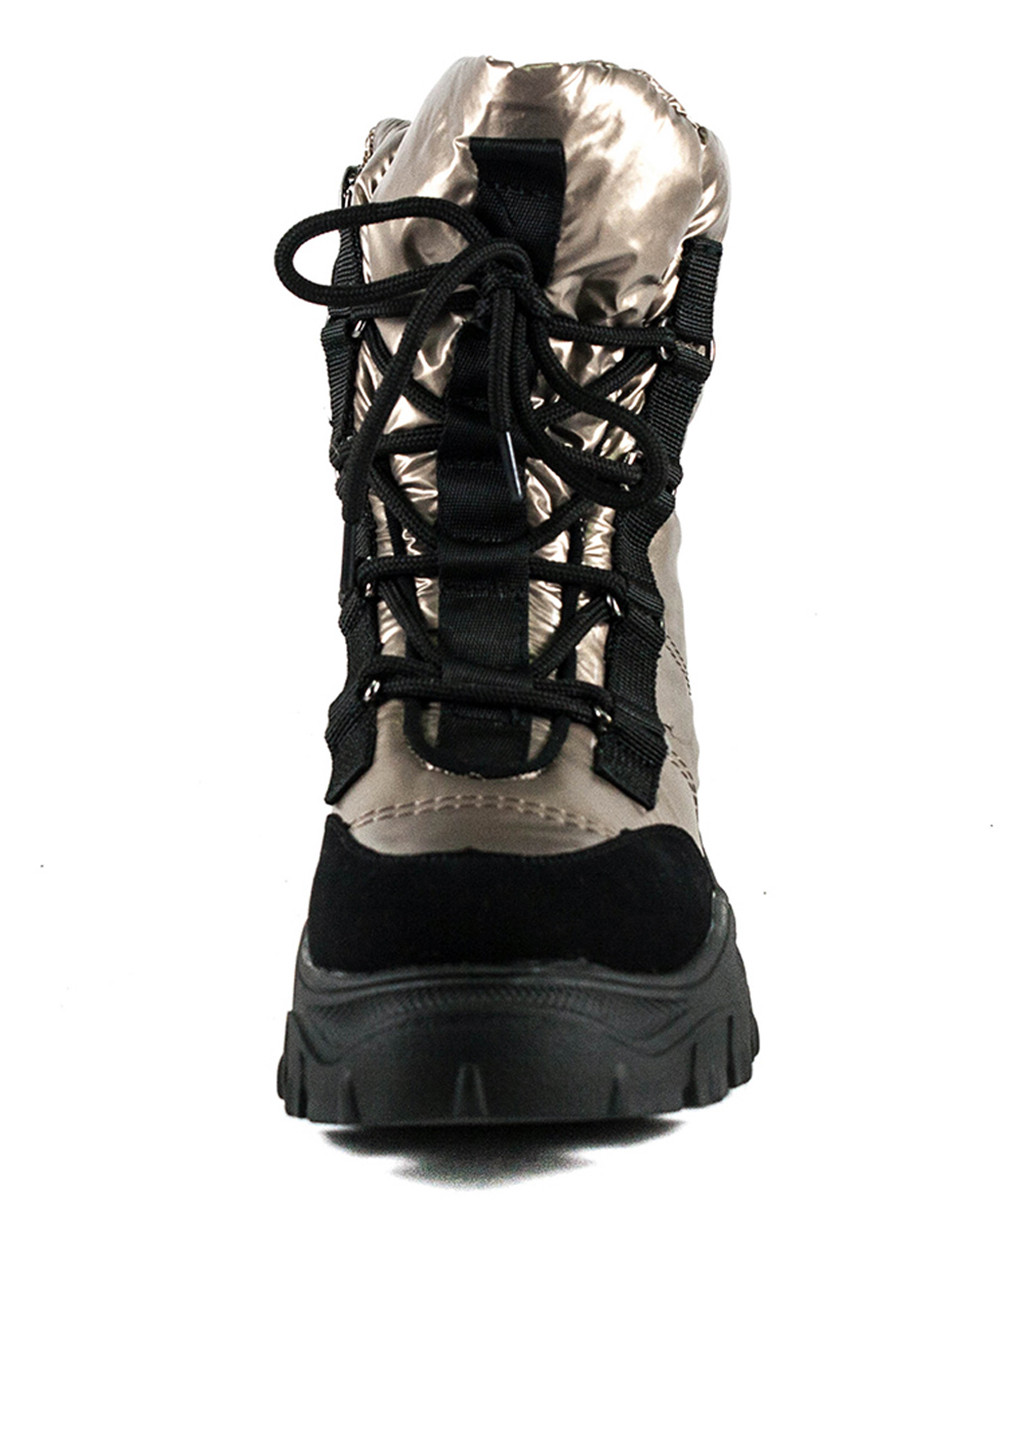 Зимние ботинки Prima d'Arte со шнуровкой тканевые